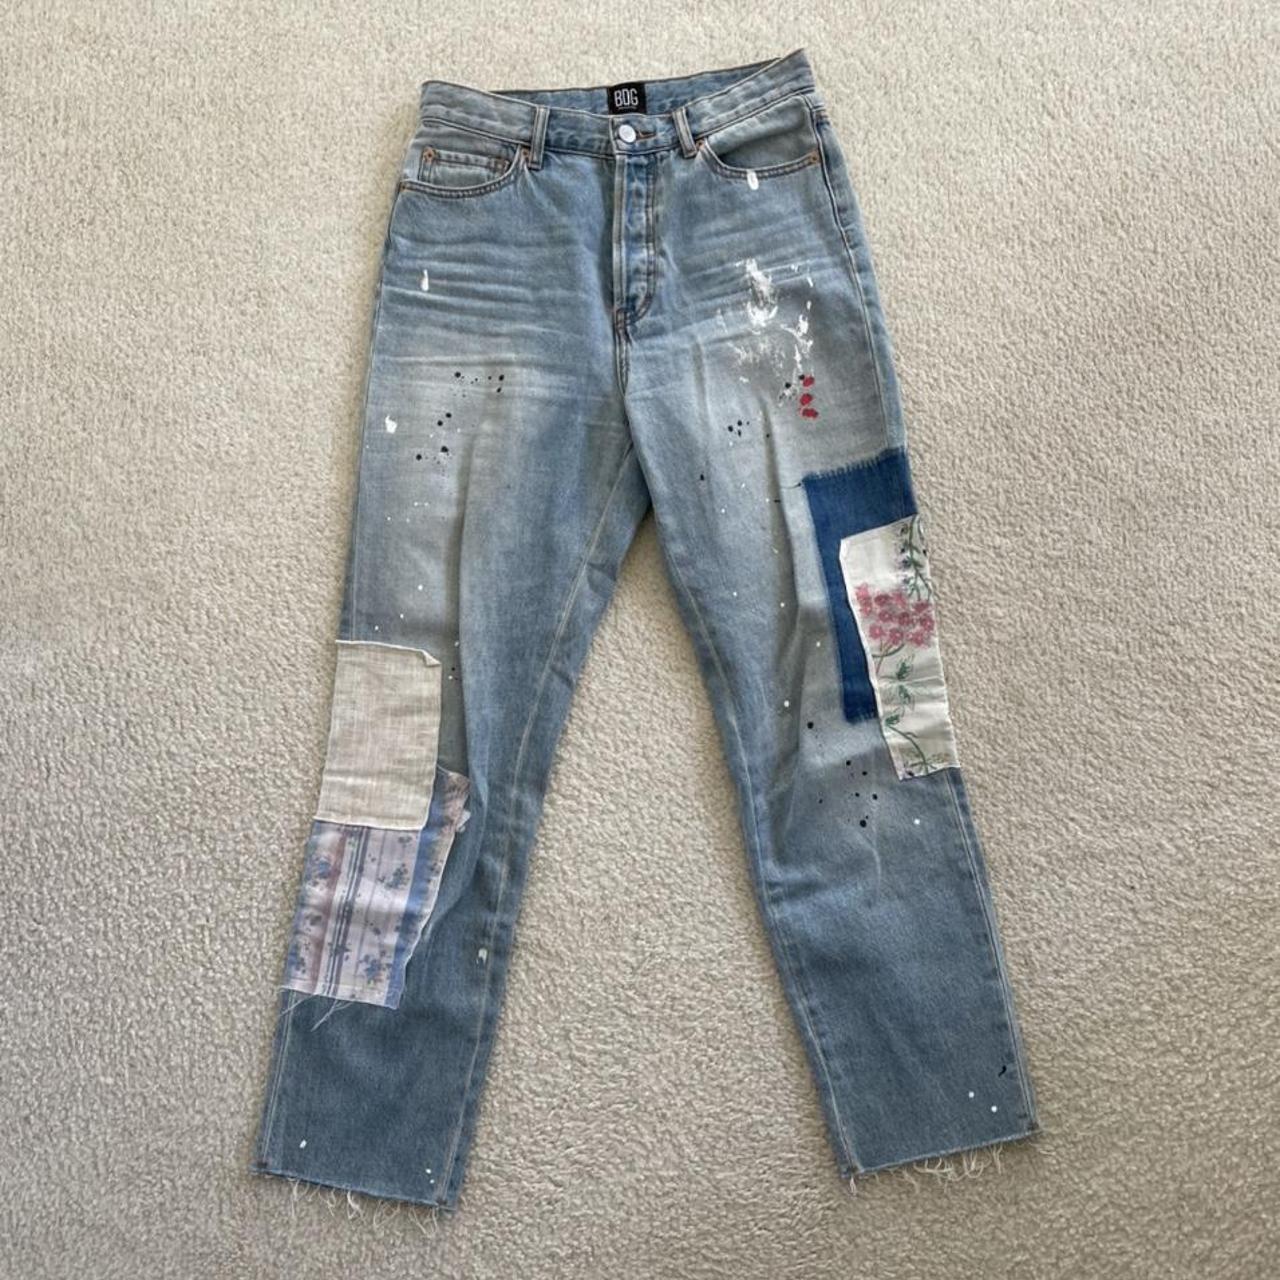 NWOT Urban Outfitters BDG Jeans Super soft denim.... - Depop